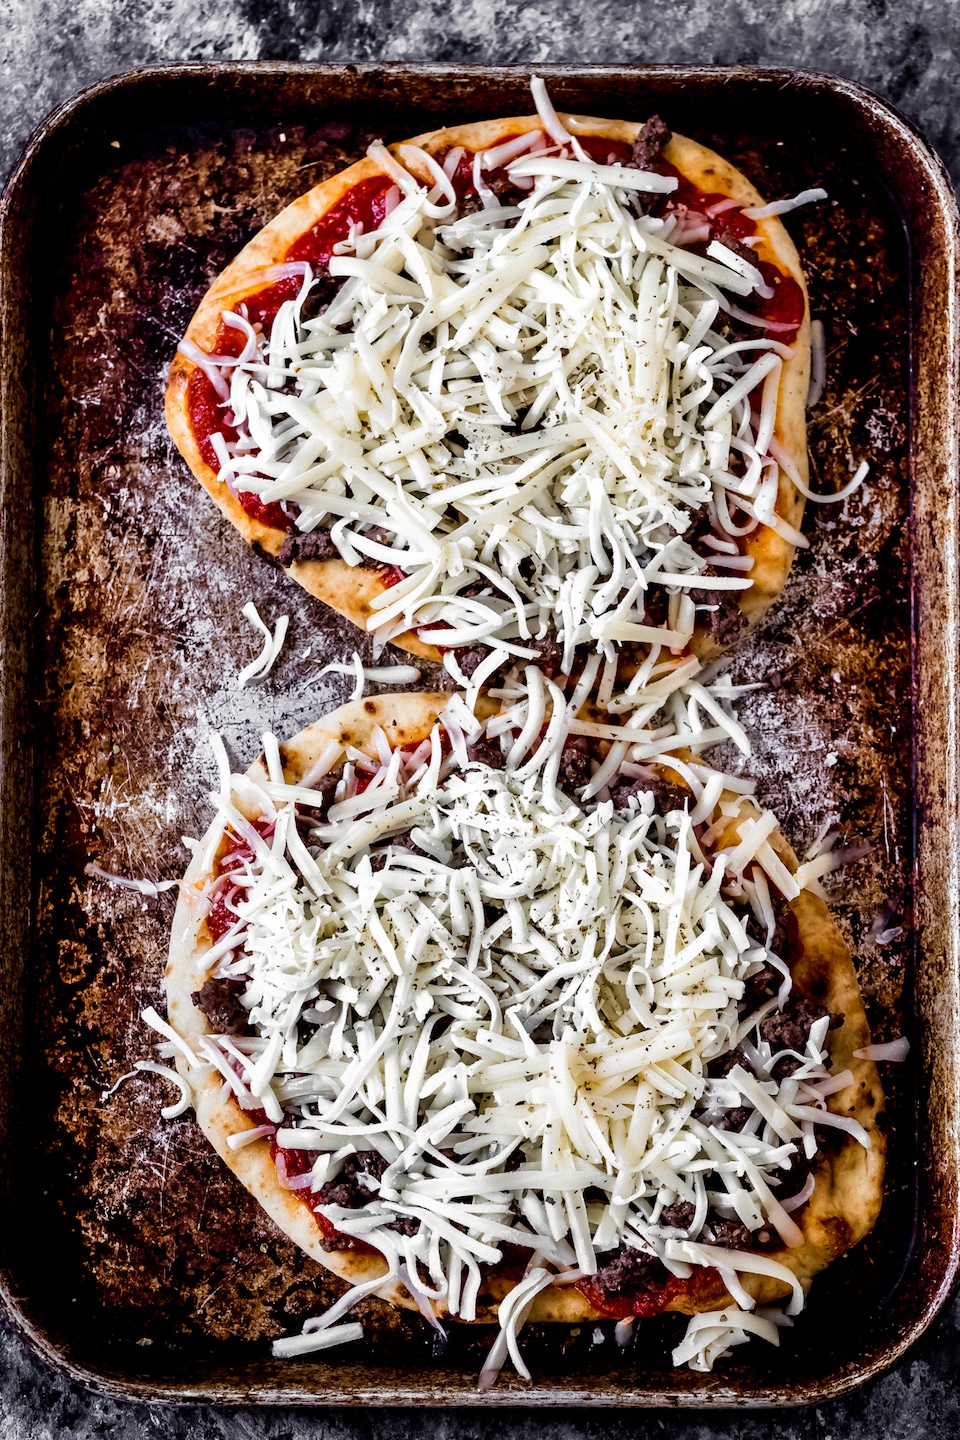 venison-pizza-recipe-1